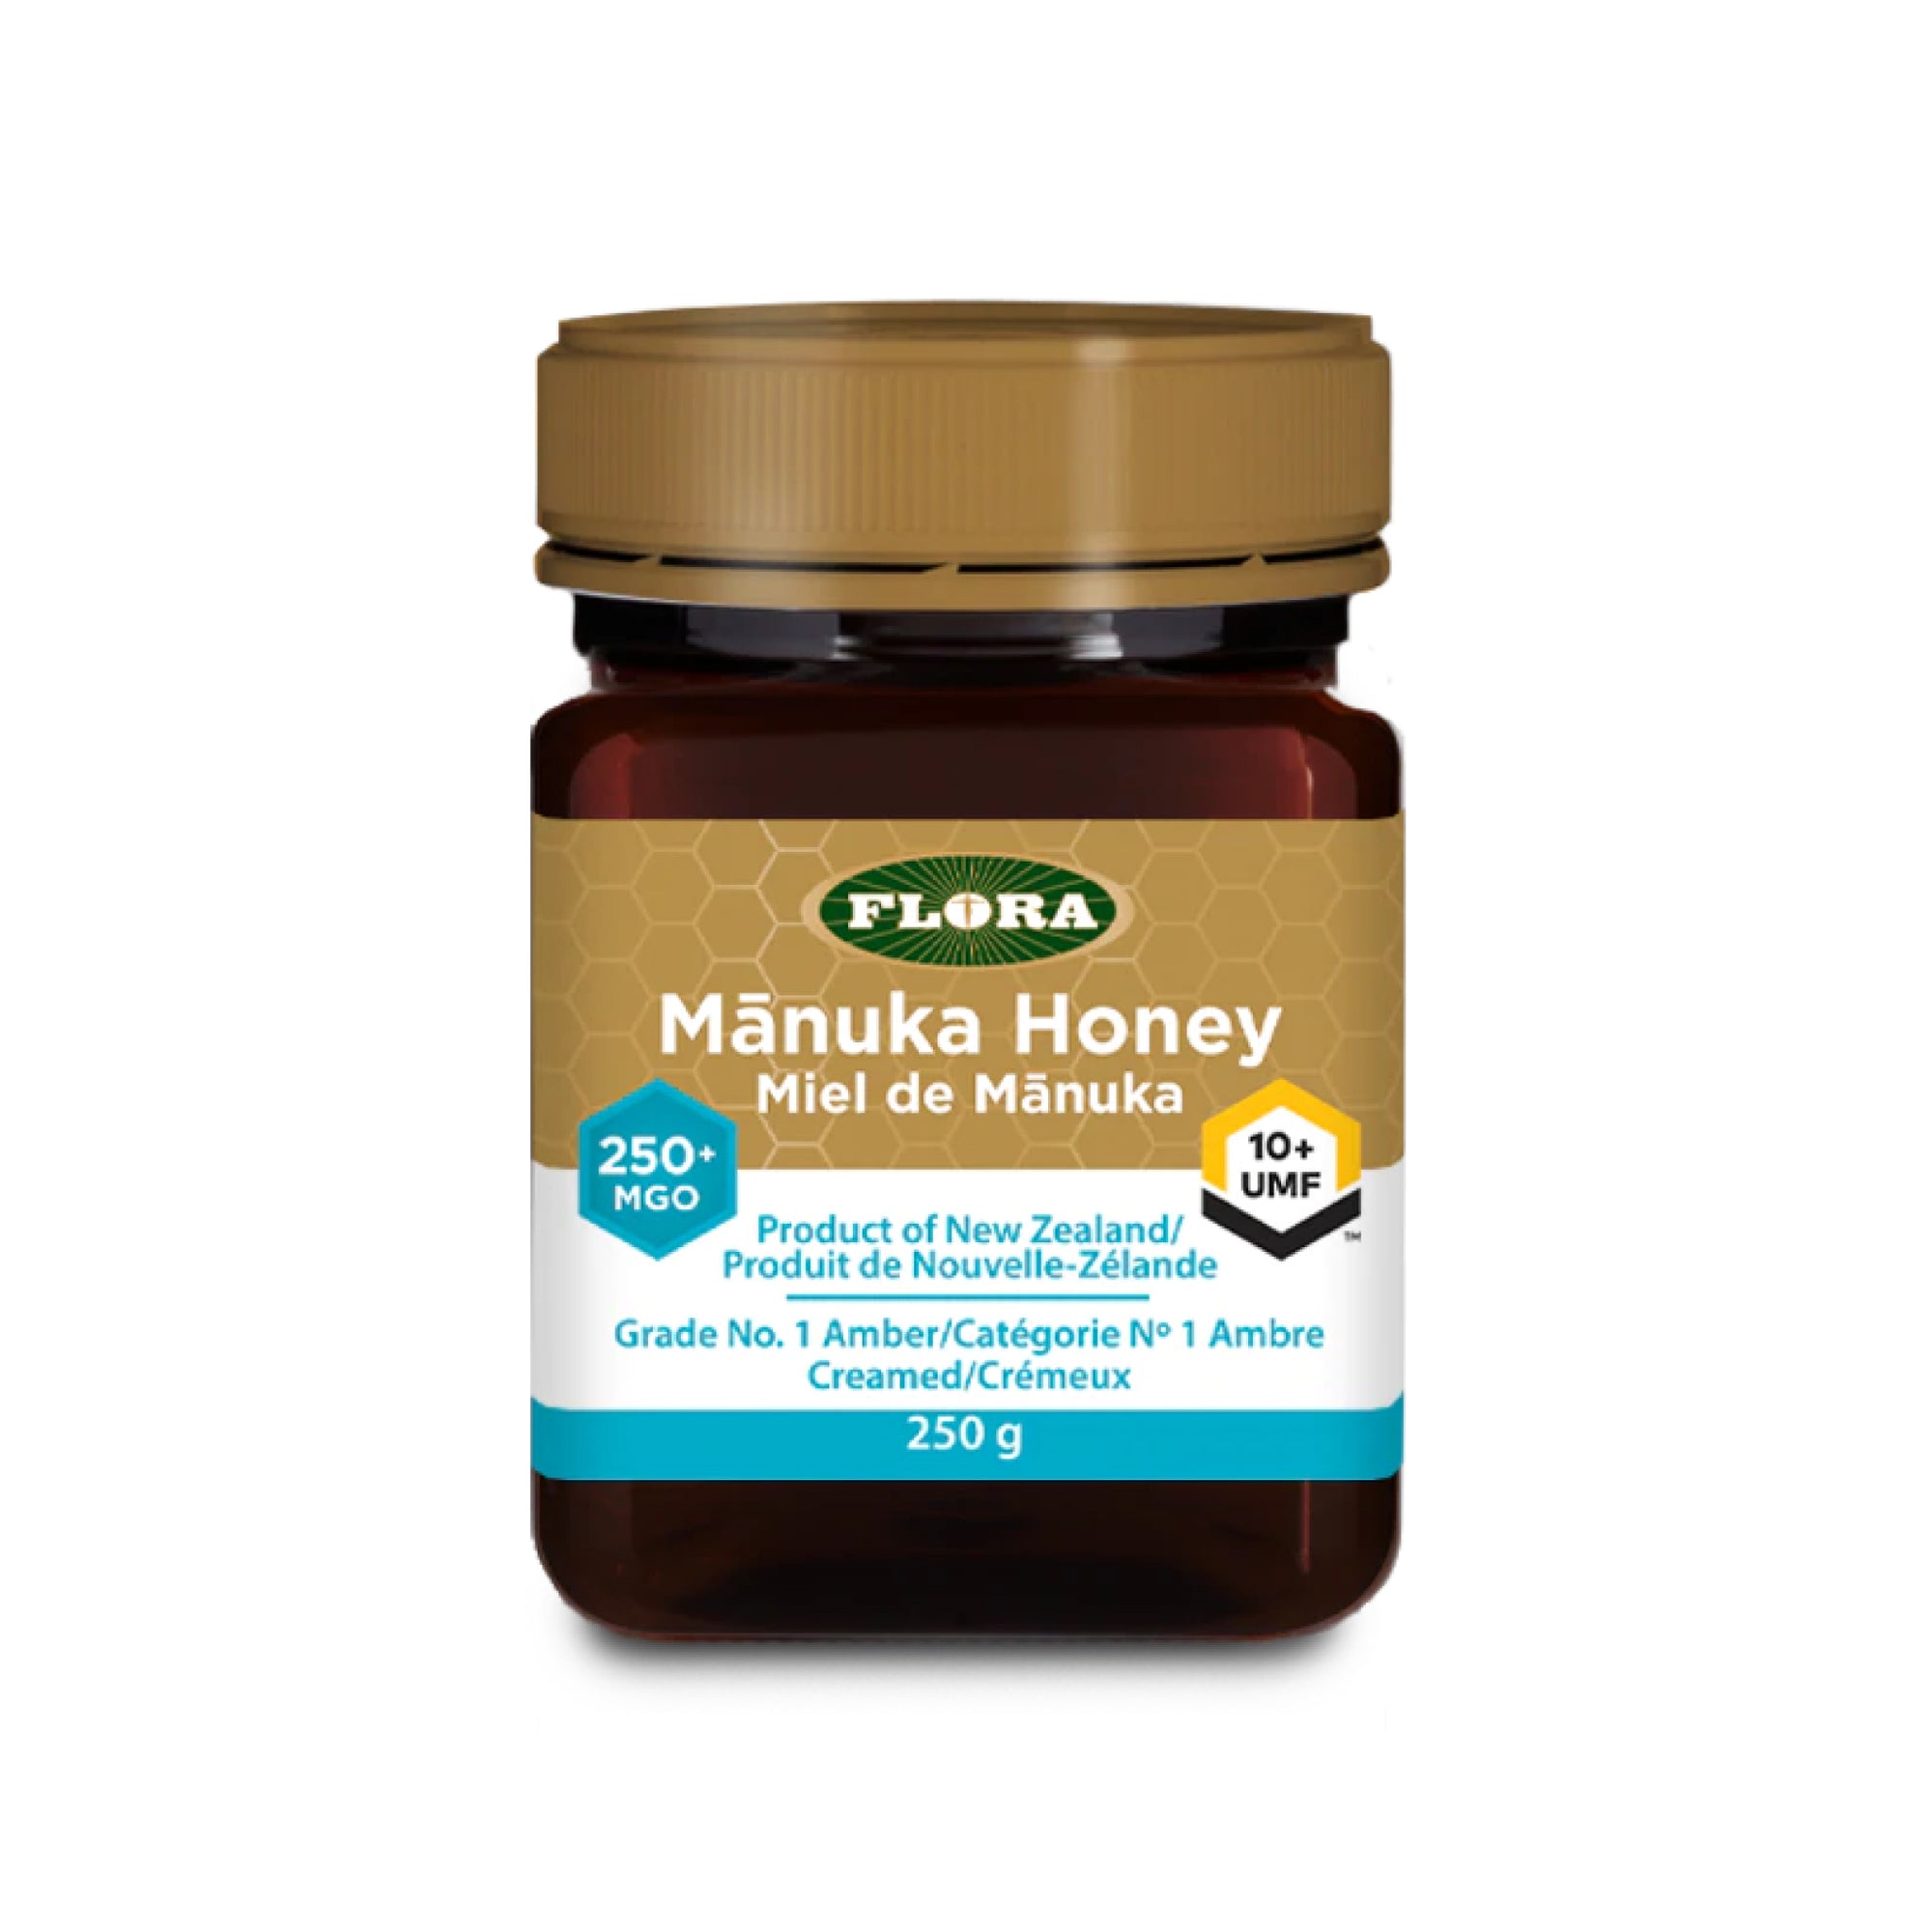 Flora Manuka Honey 250+ MGO/10+ UMF 250g